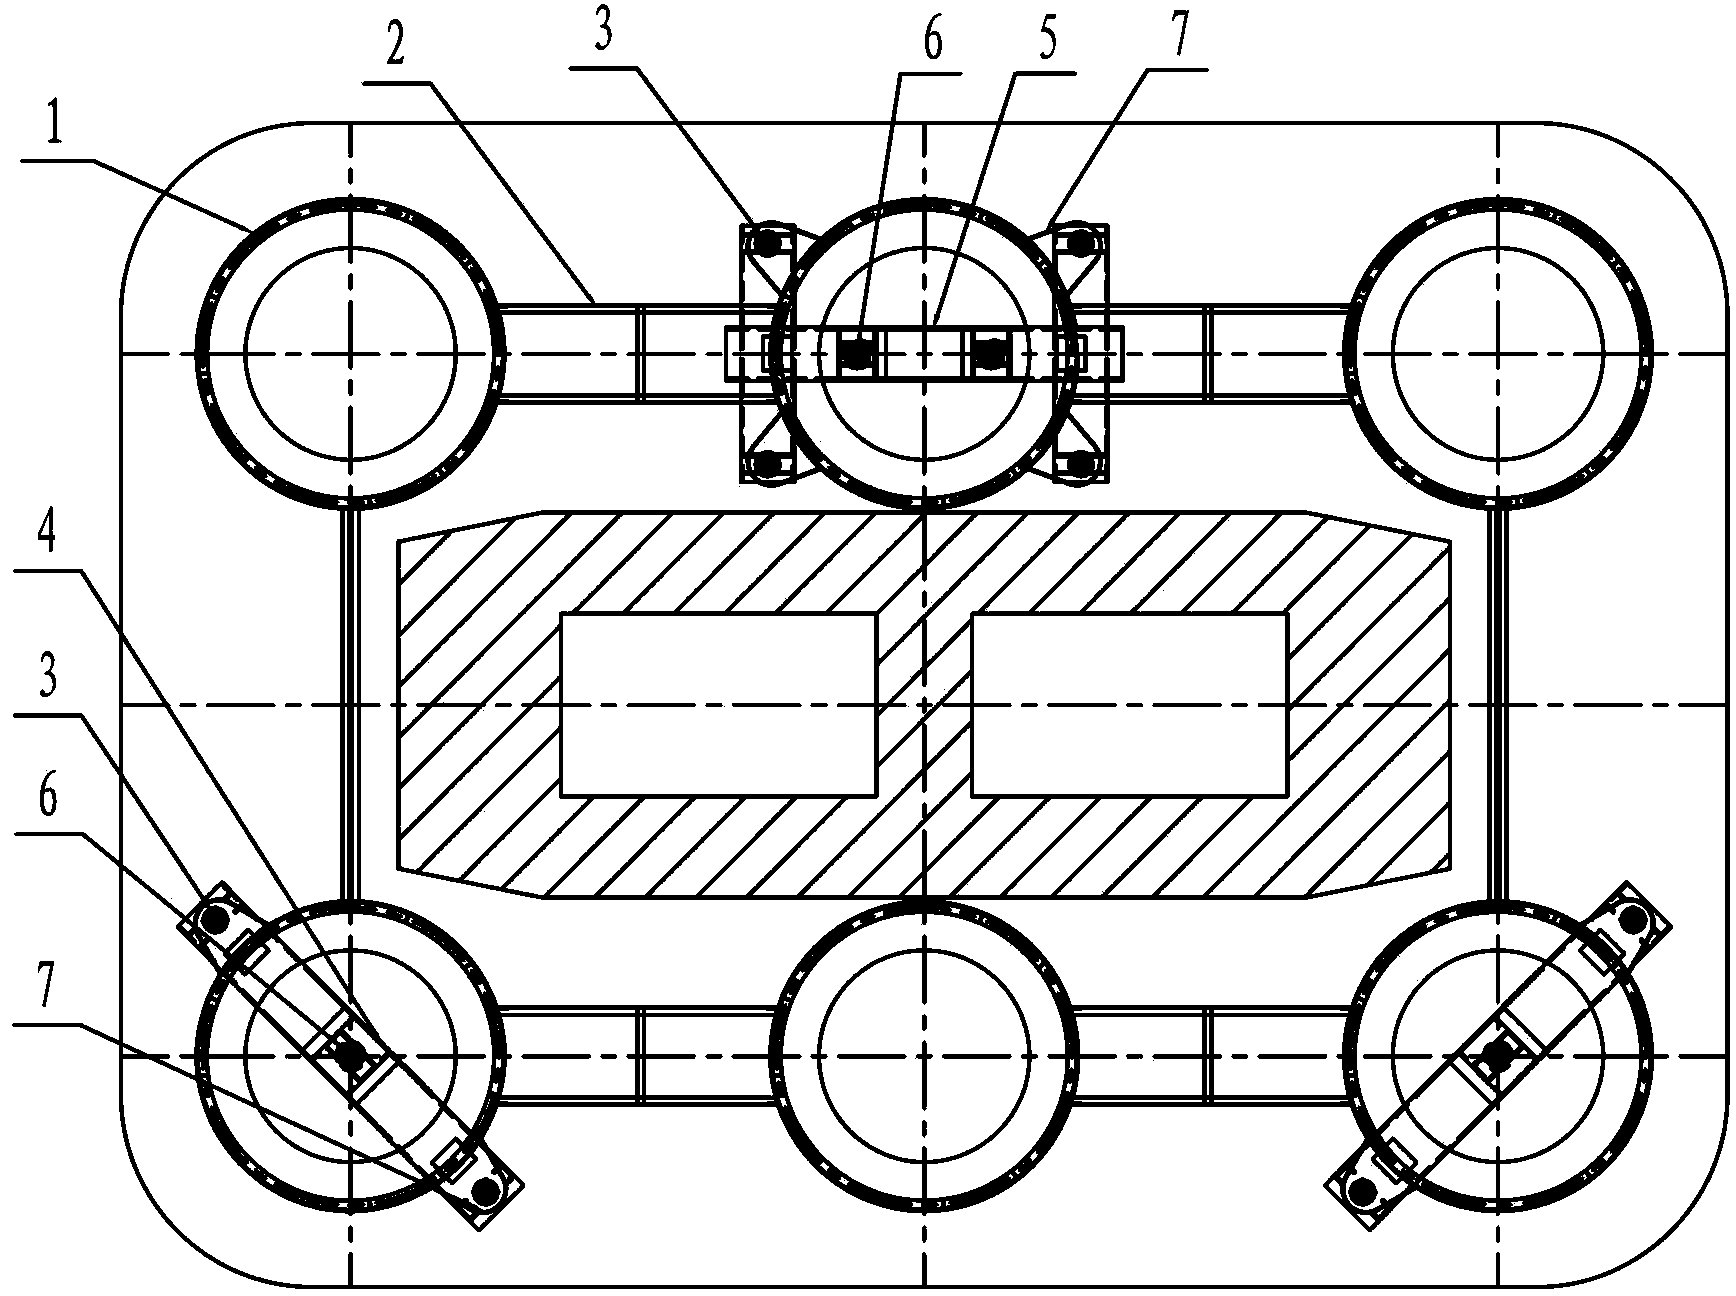 Prefabricated bearing platform mounting method